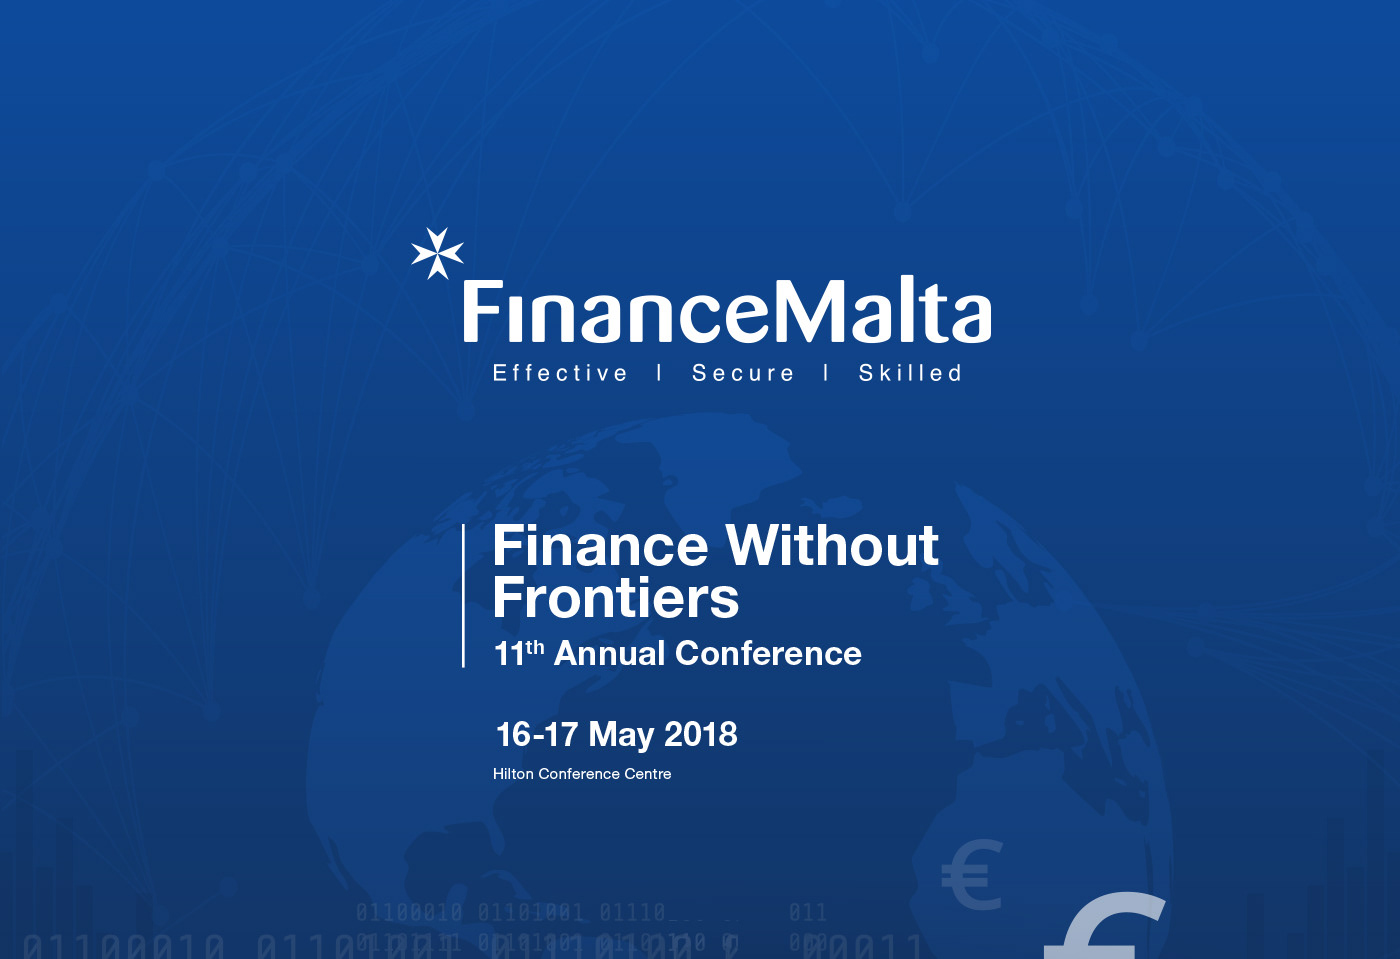 malta Financial Services Events graphic design 